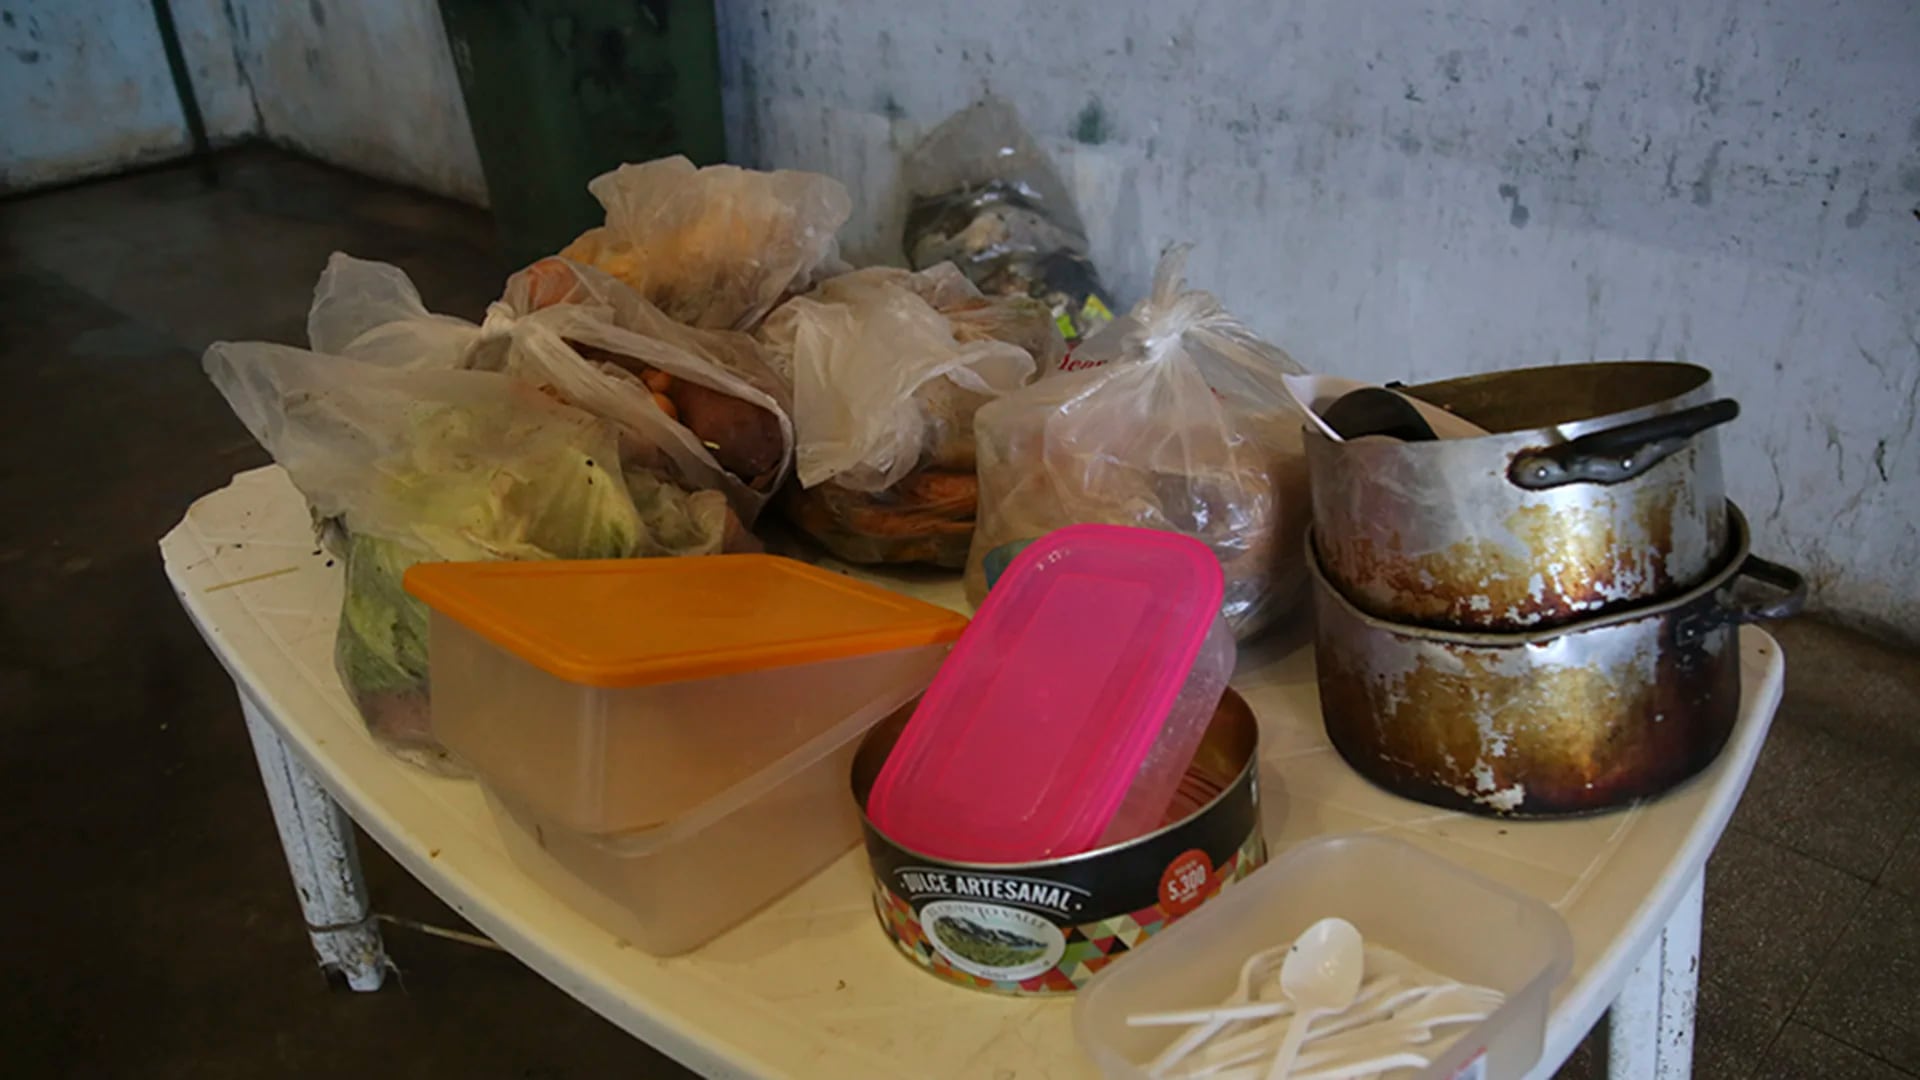 Los presos se niegan a recibir comida de la cocina de Marcos Paz. Una inspección detectó insectos y podredumbre.